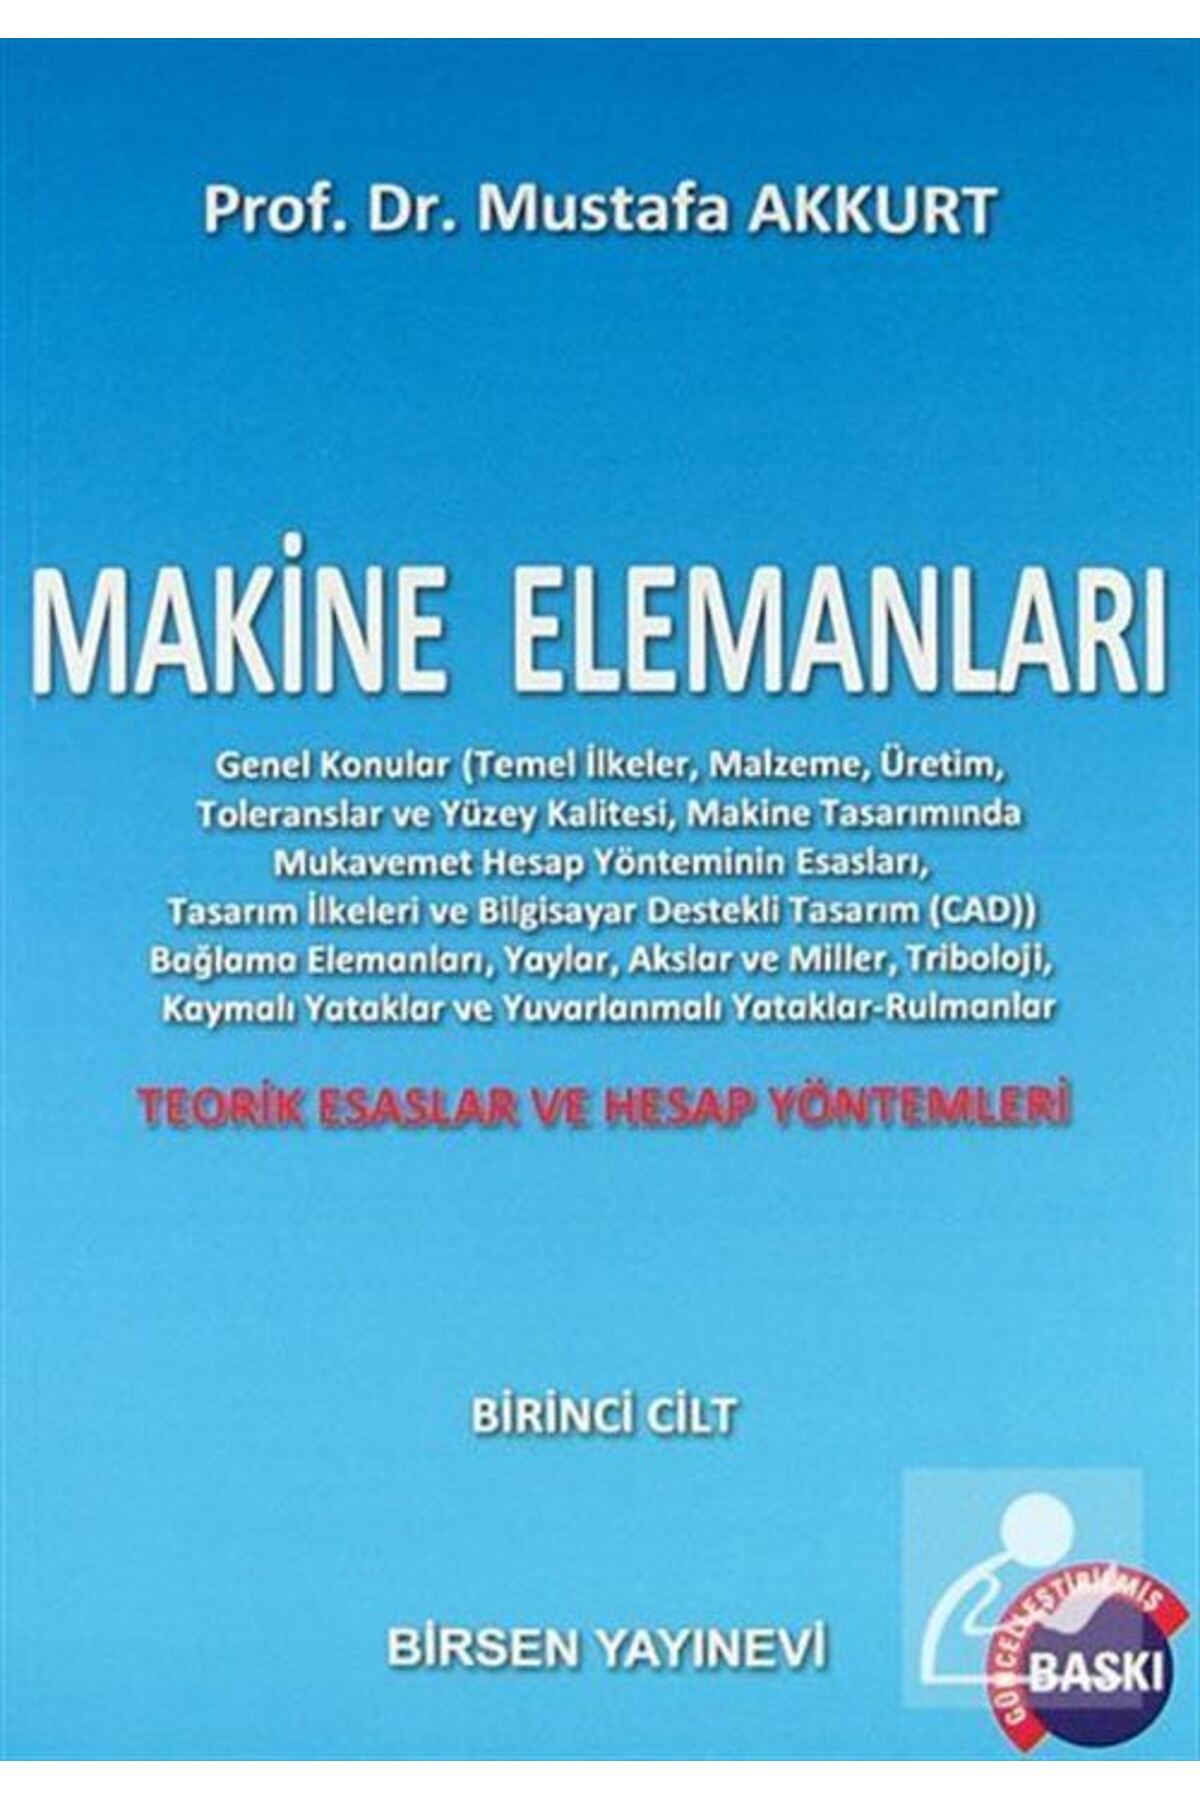 Birsen Yayınevi Makine Elemanları Cilt : 1 - Mustafa Akkurt